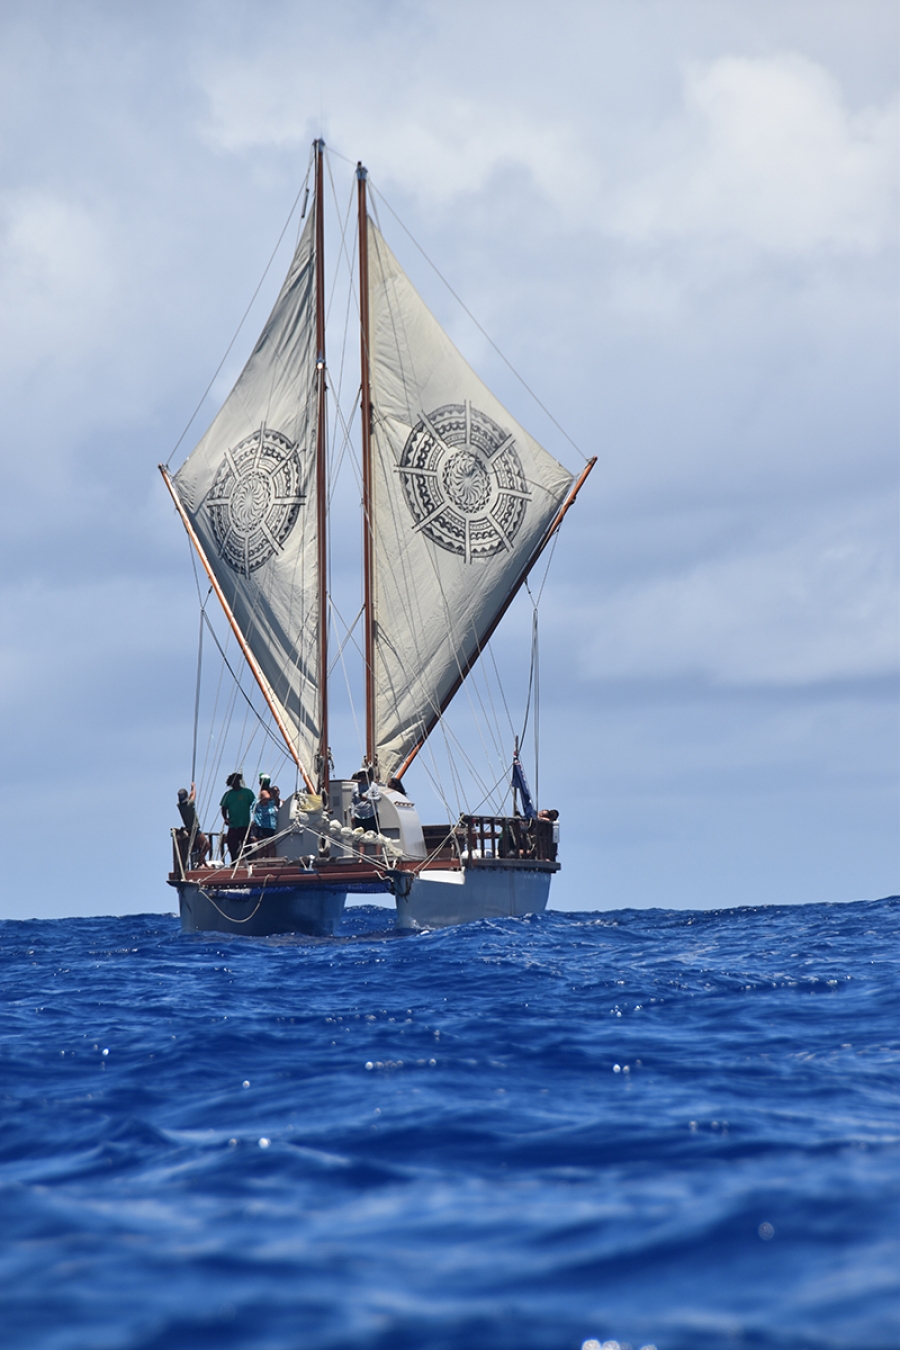 Thomas Wynne: Changing tack – time to sail away